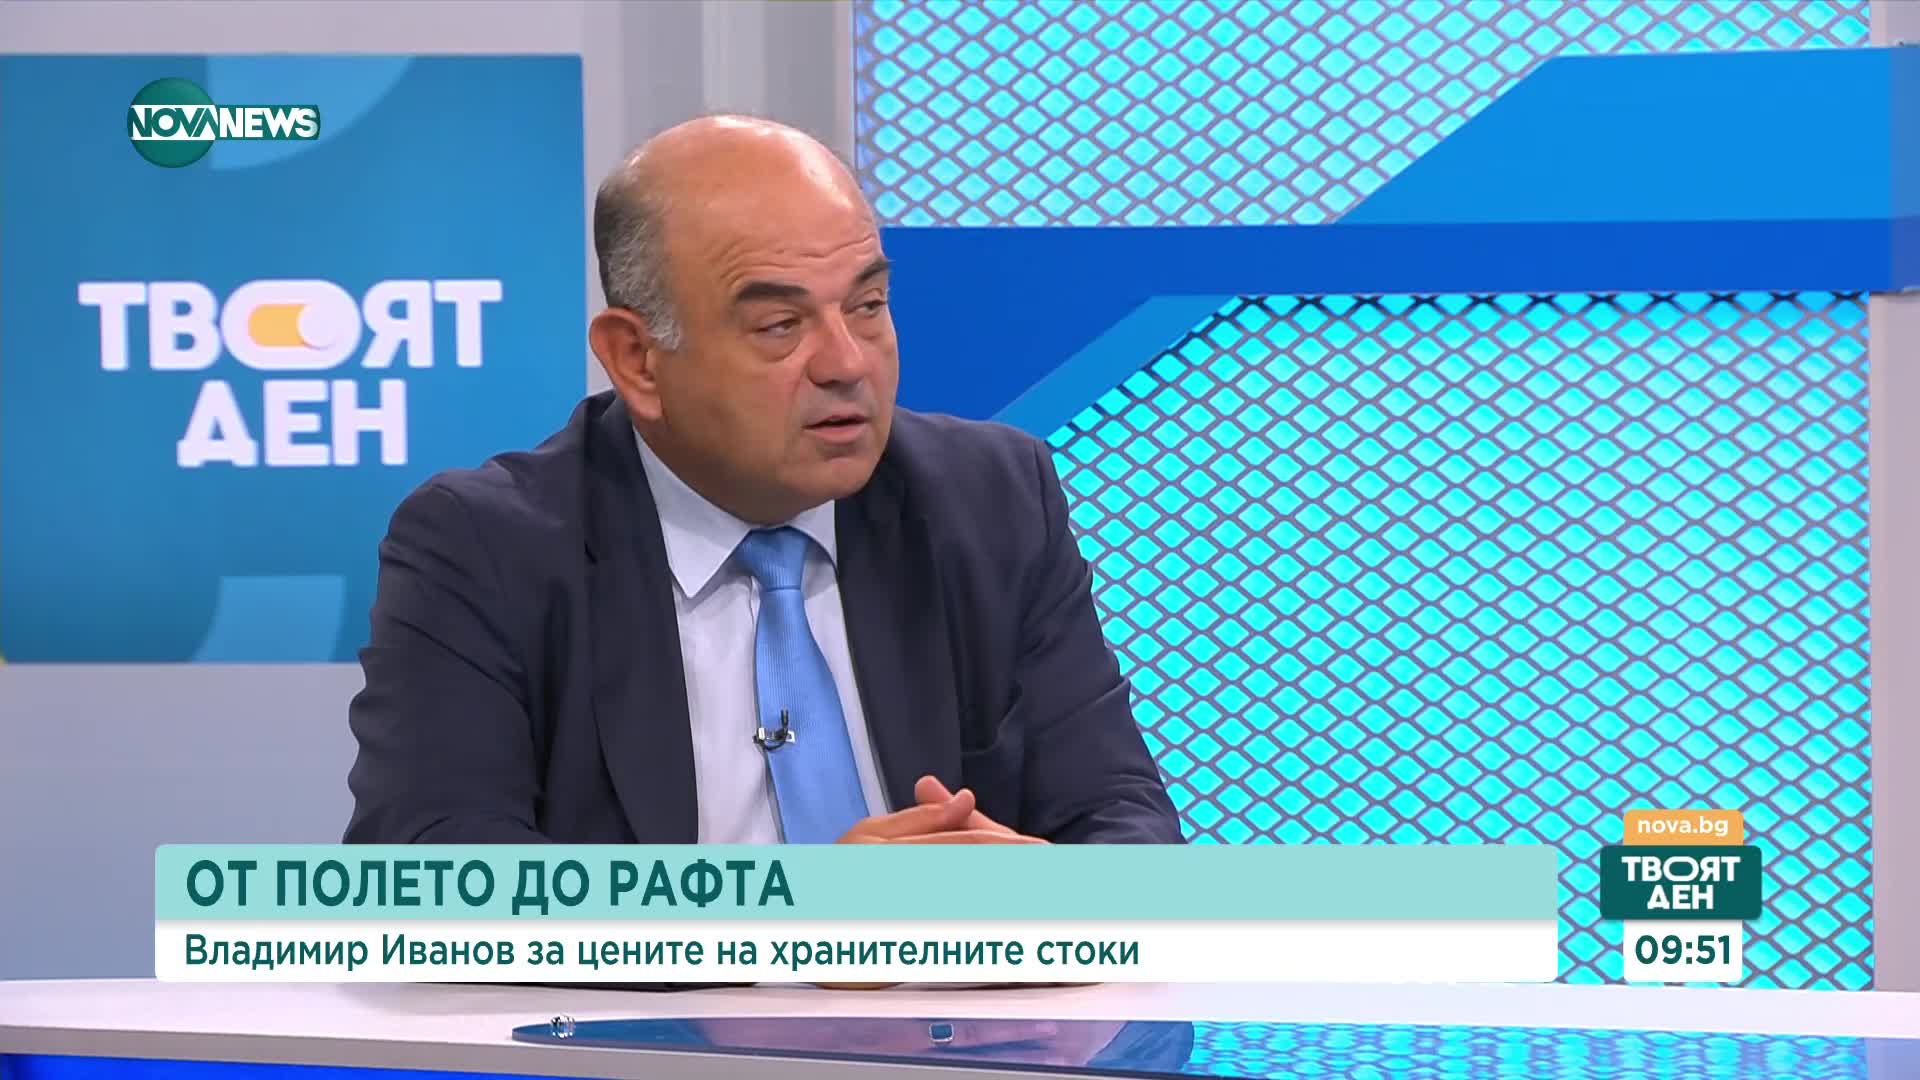 Владимир Иванов: Има стабилизиране на пазара на храните